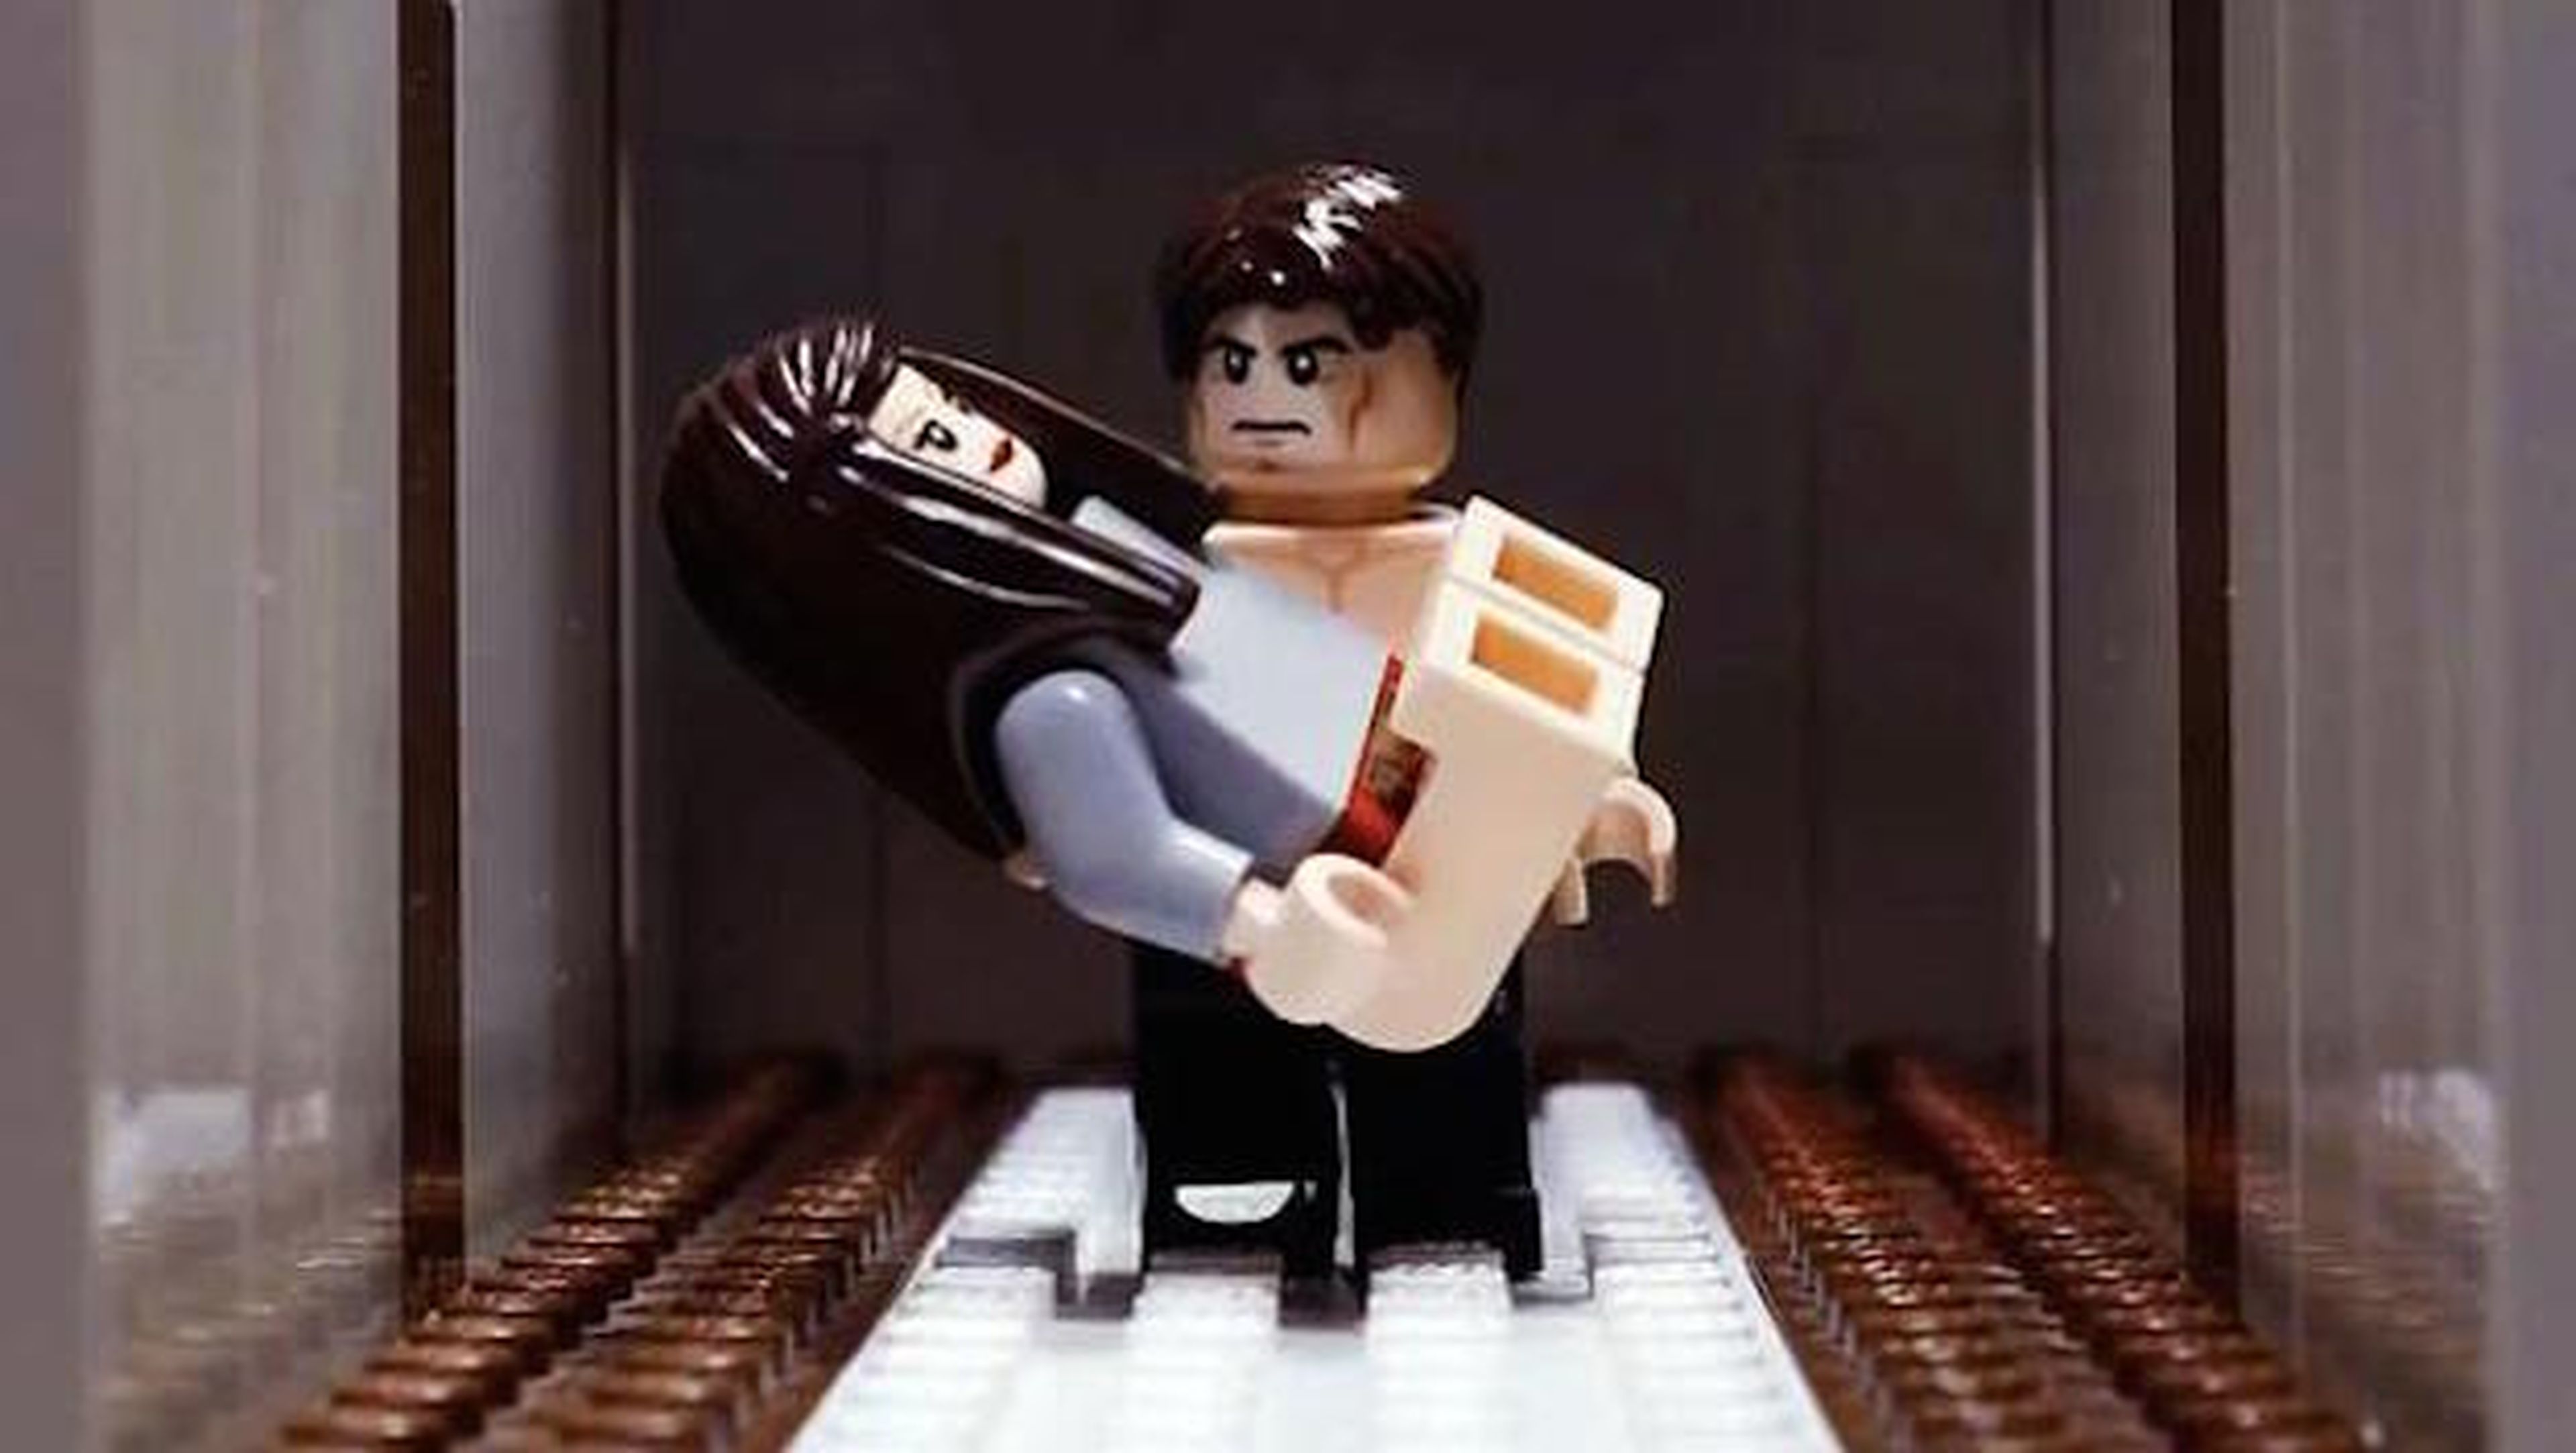 Escena del trailer de 50 sombras de Grey protagonizado por muñecos de Lego